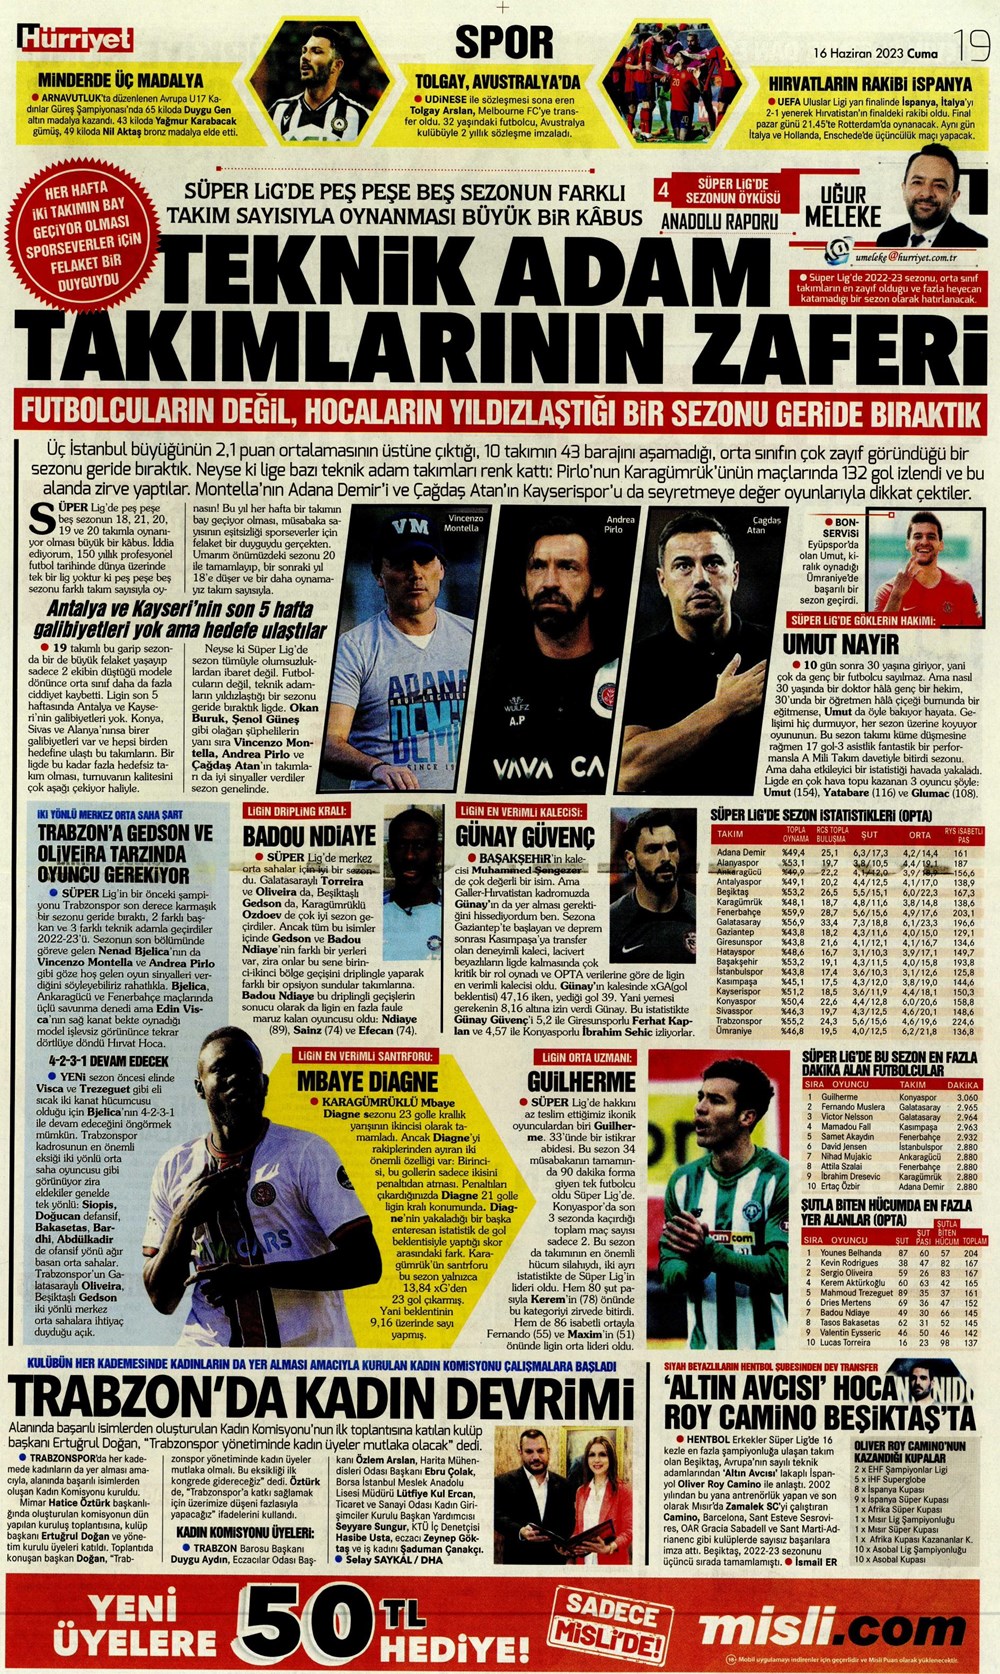 "Dzeko çok yakın" Sporun manşetleri (16 Haziran 2023)  - 18. Foto